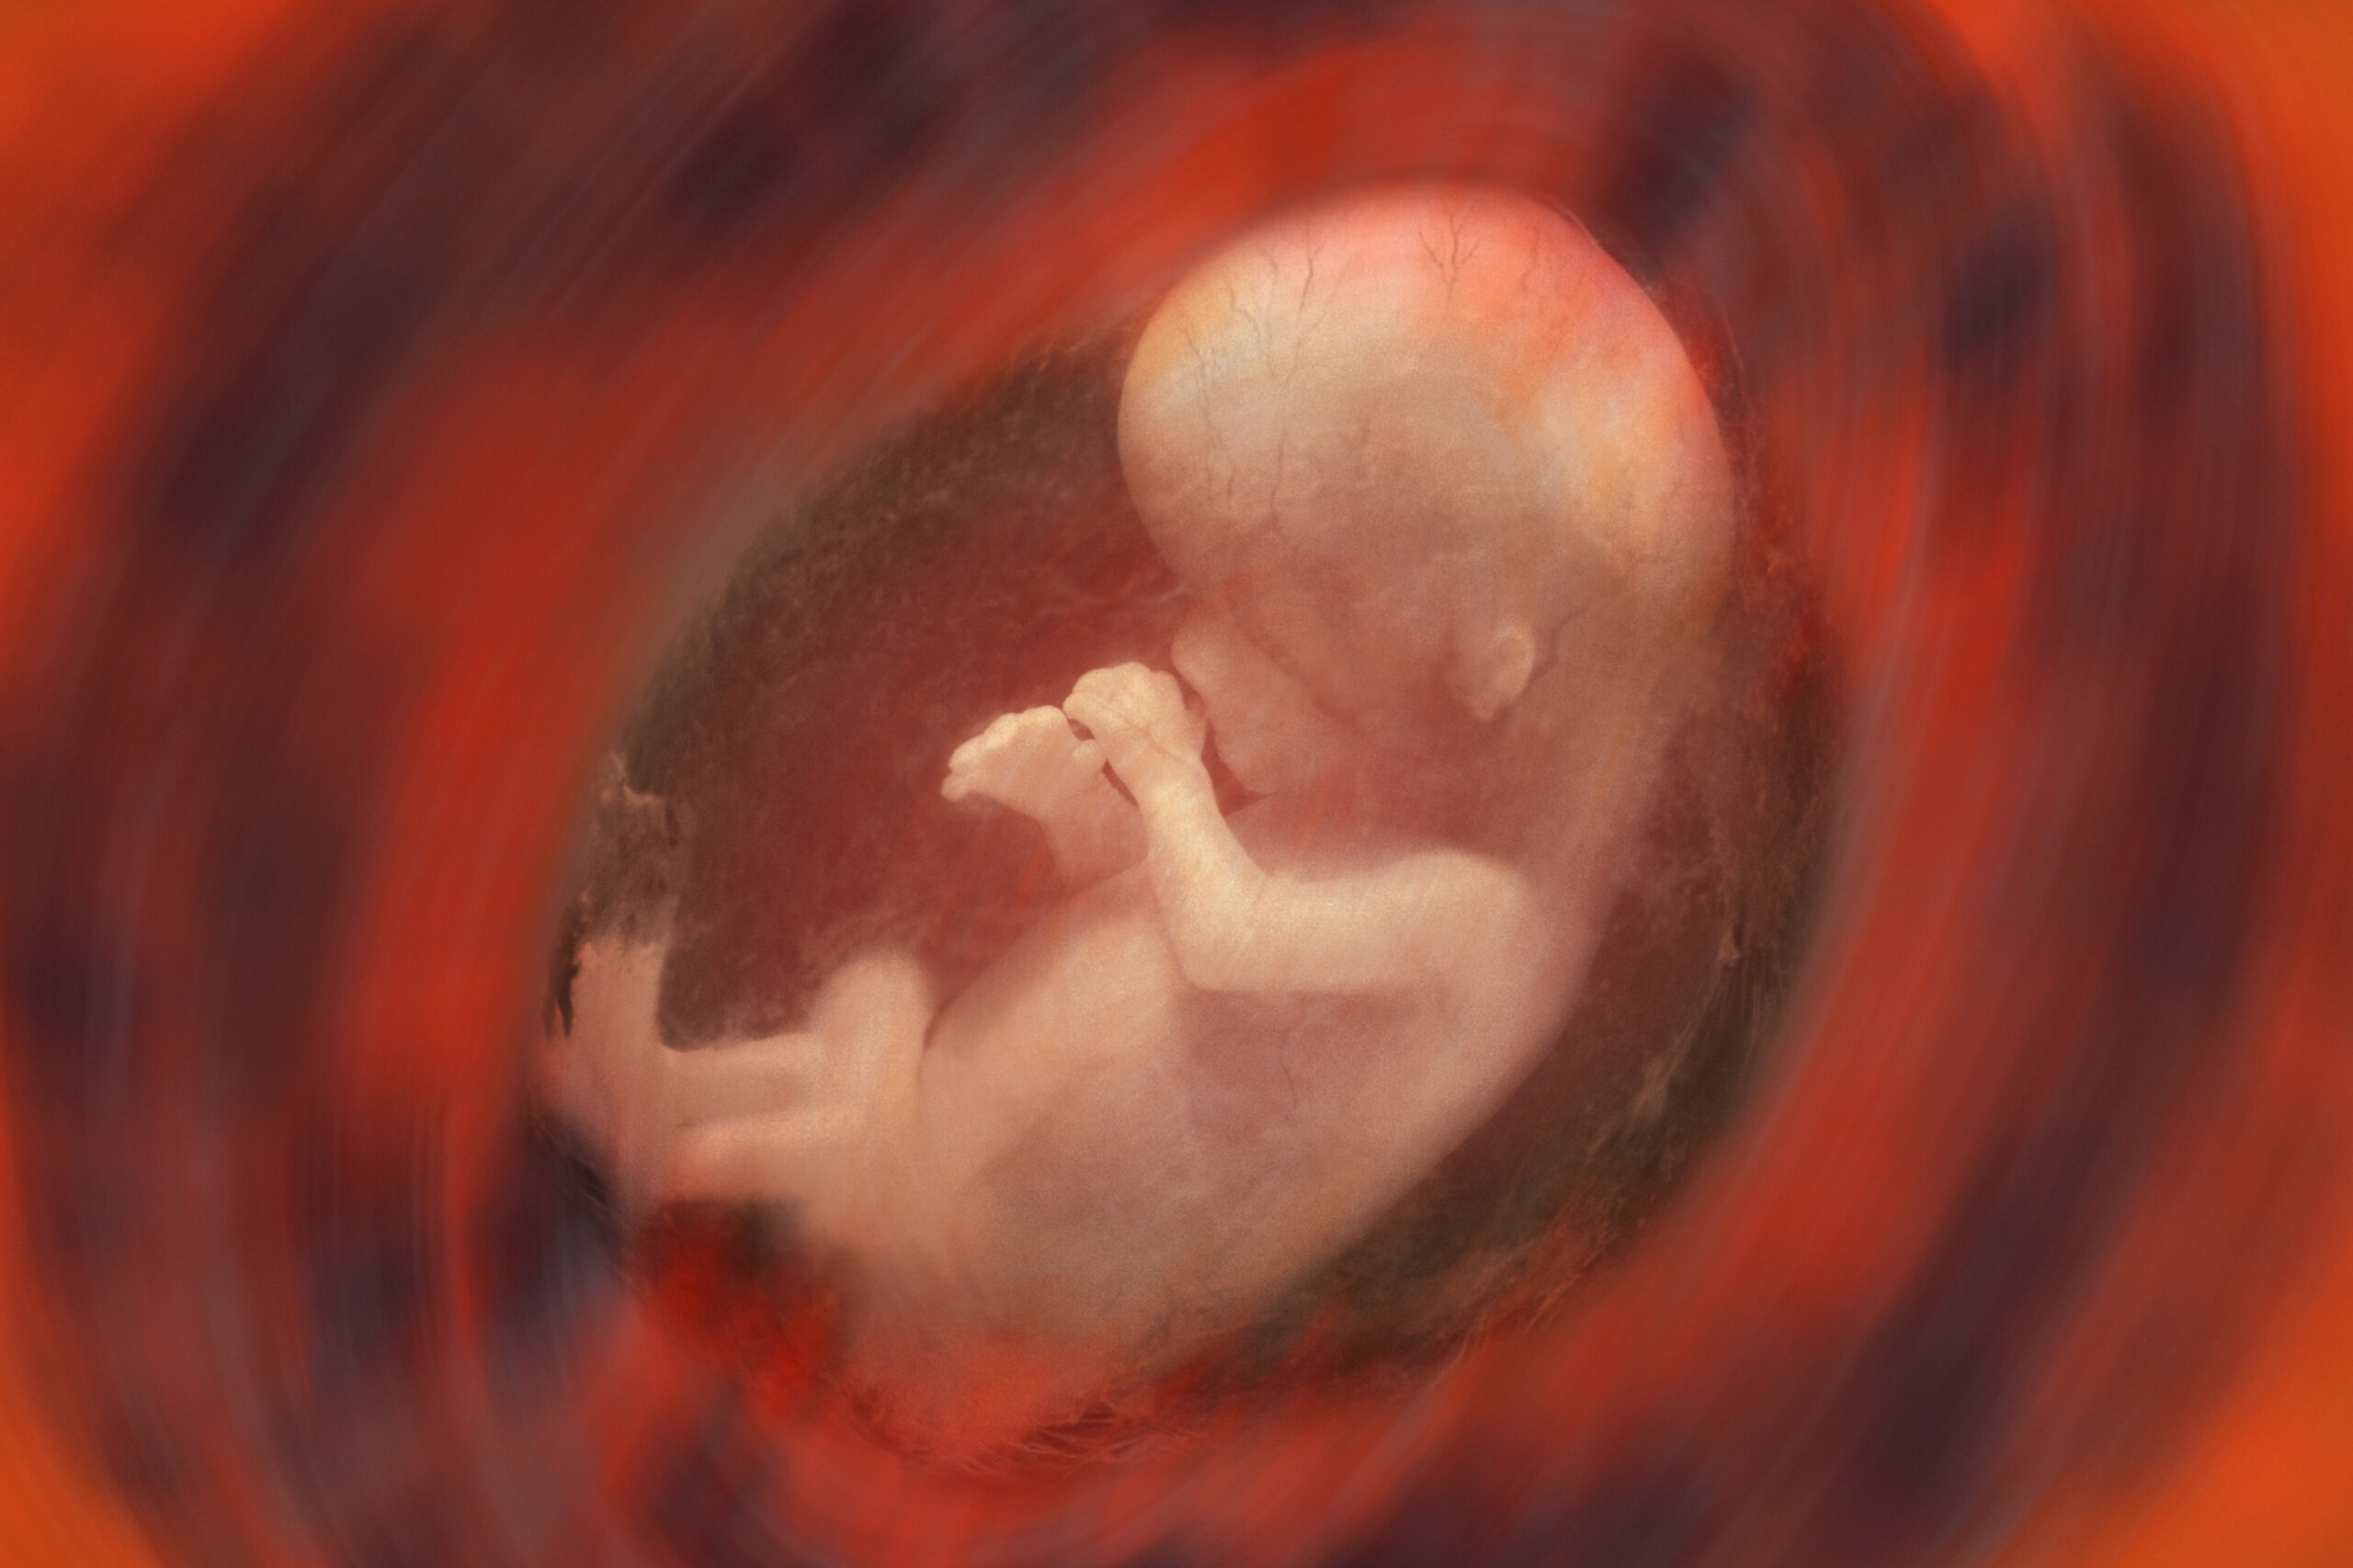 Плод становится человеком. 10 Недель беременности фото плода. Эмбрион на 10 неделе беременности. Зародыш человека 13 недель.